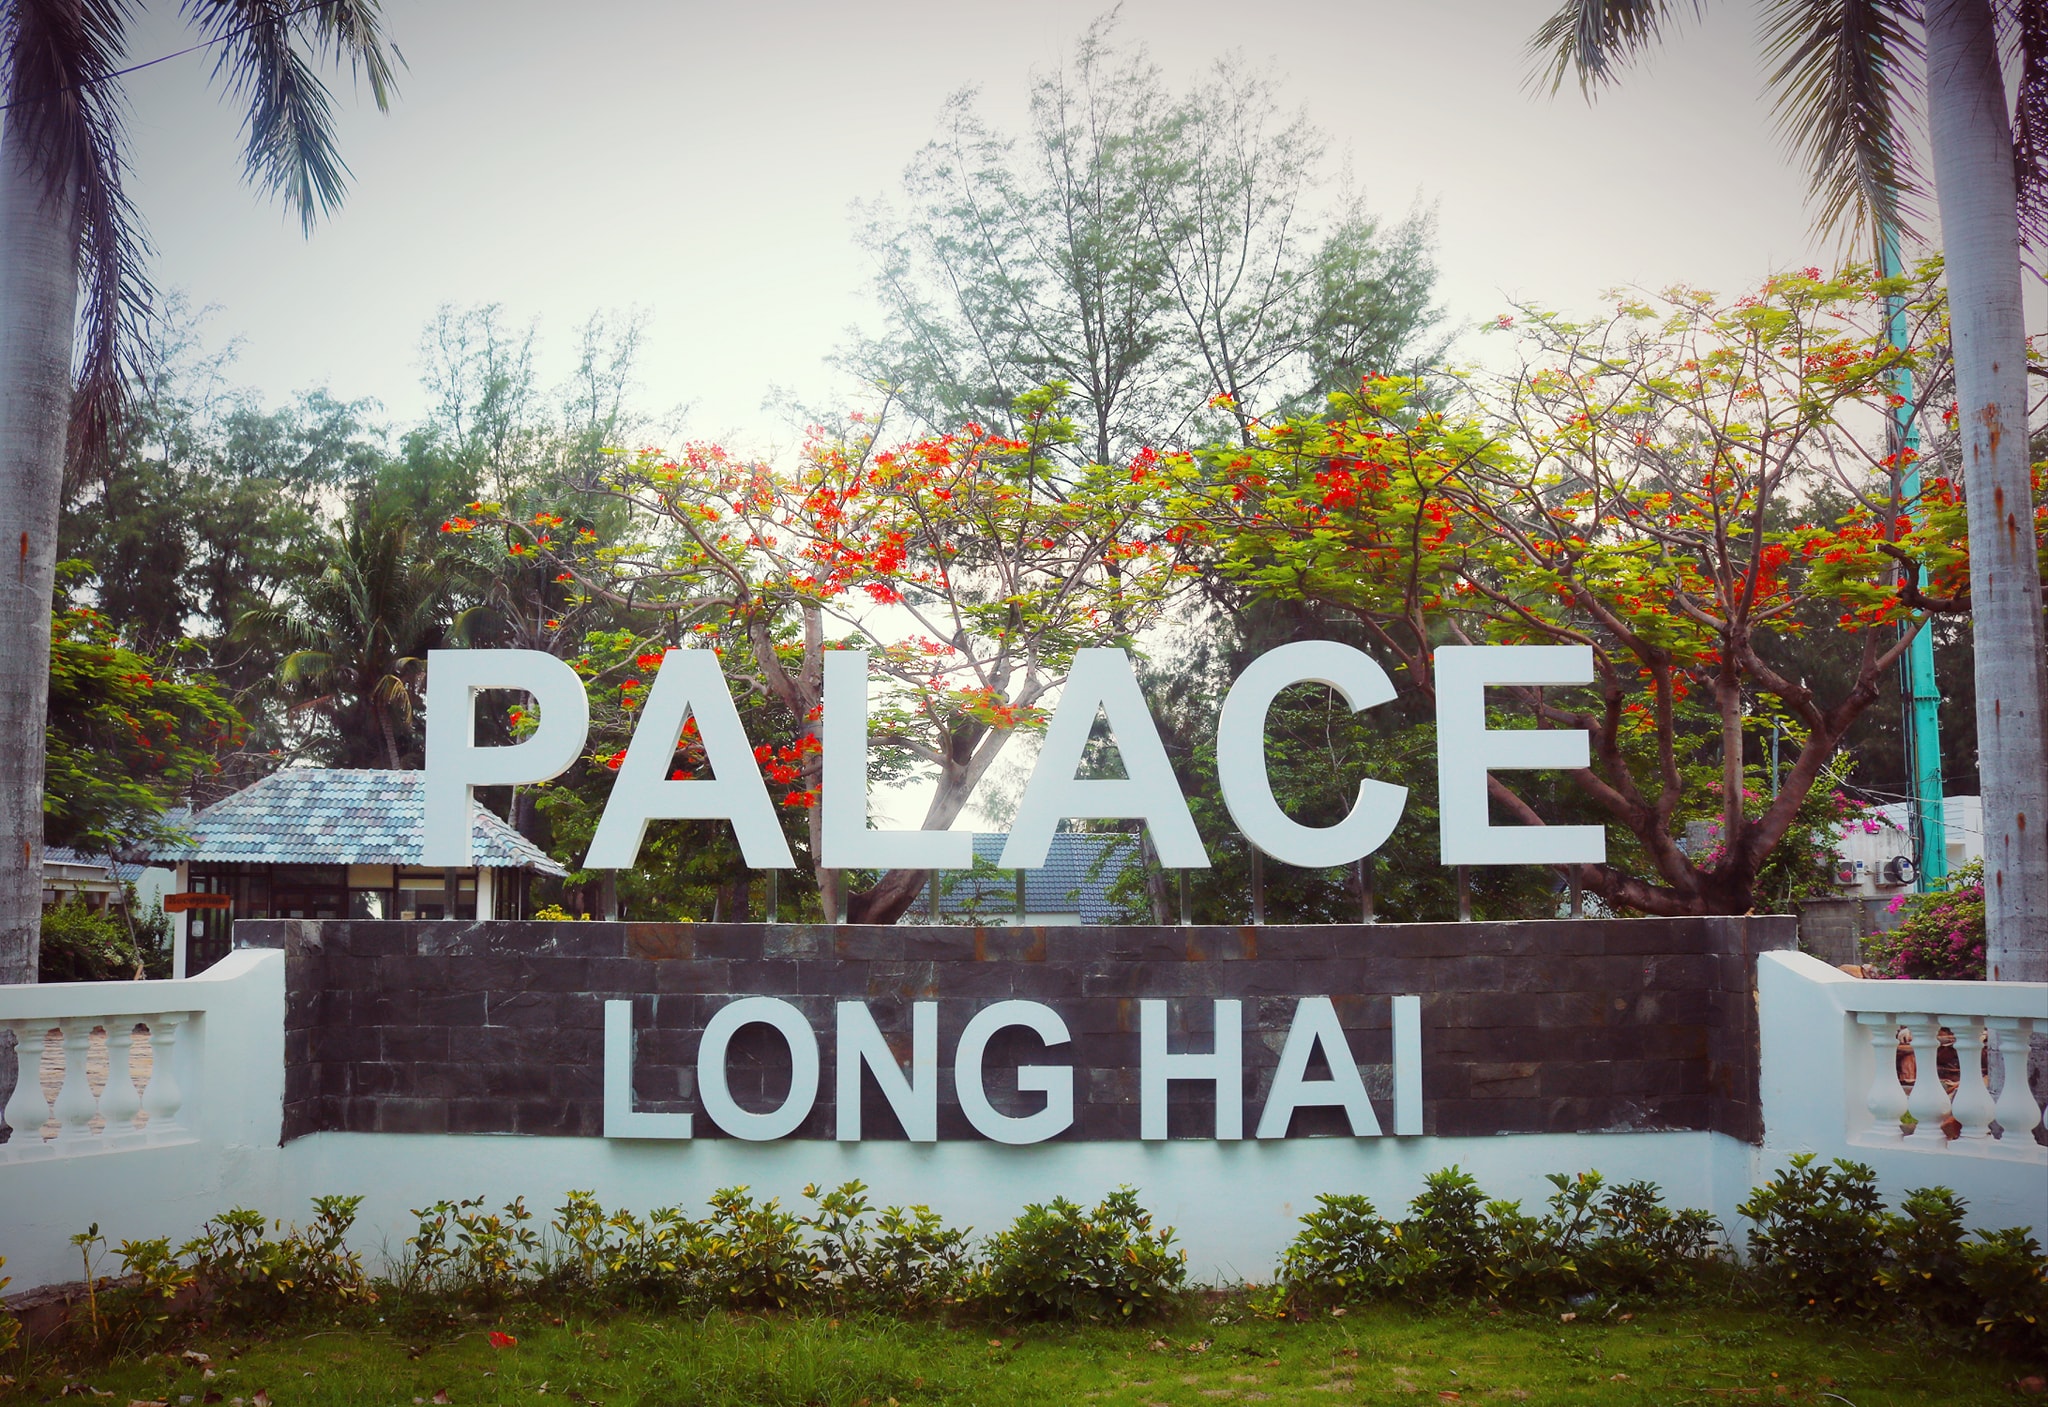 Palace Resort - Hài hòa giữa thiên nhiên và hiện đại 